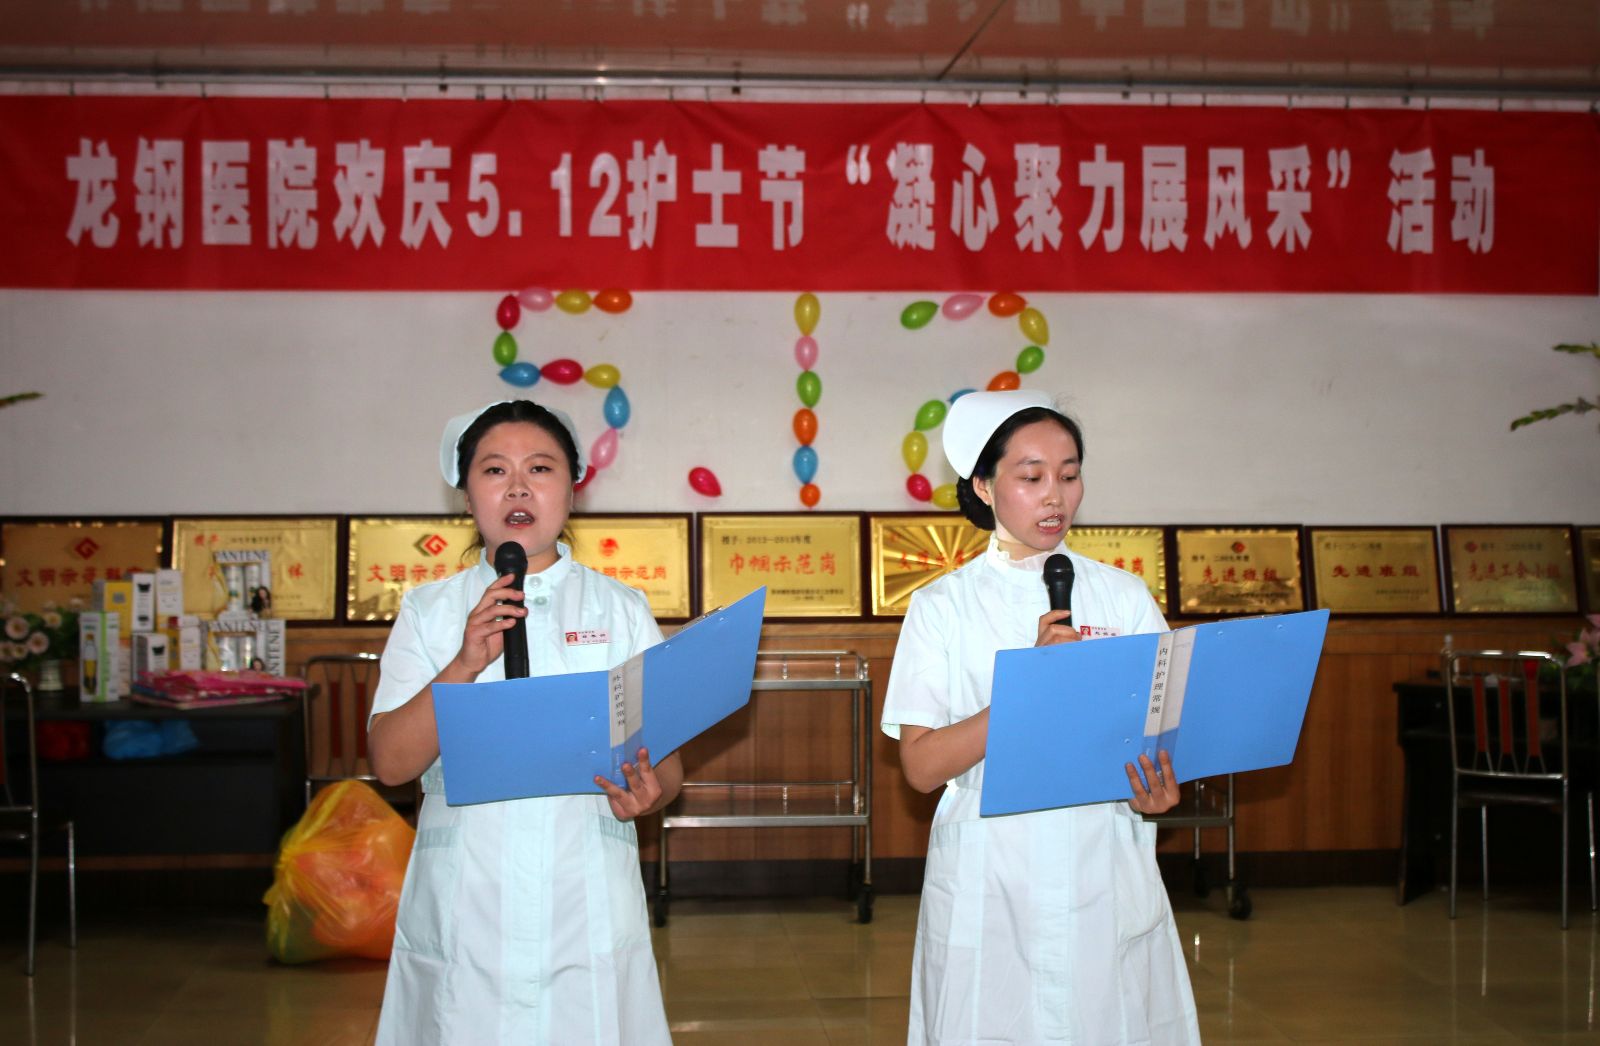 龙钢医院举办5.12护士节“凝心聚力展风采” 主题联谊晚会